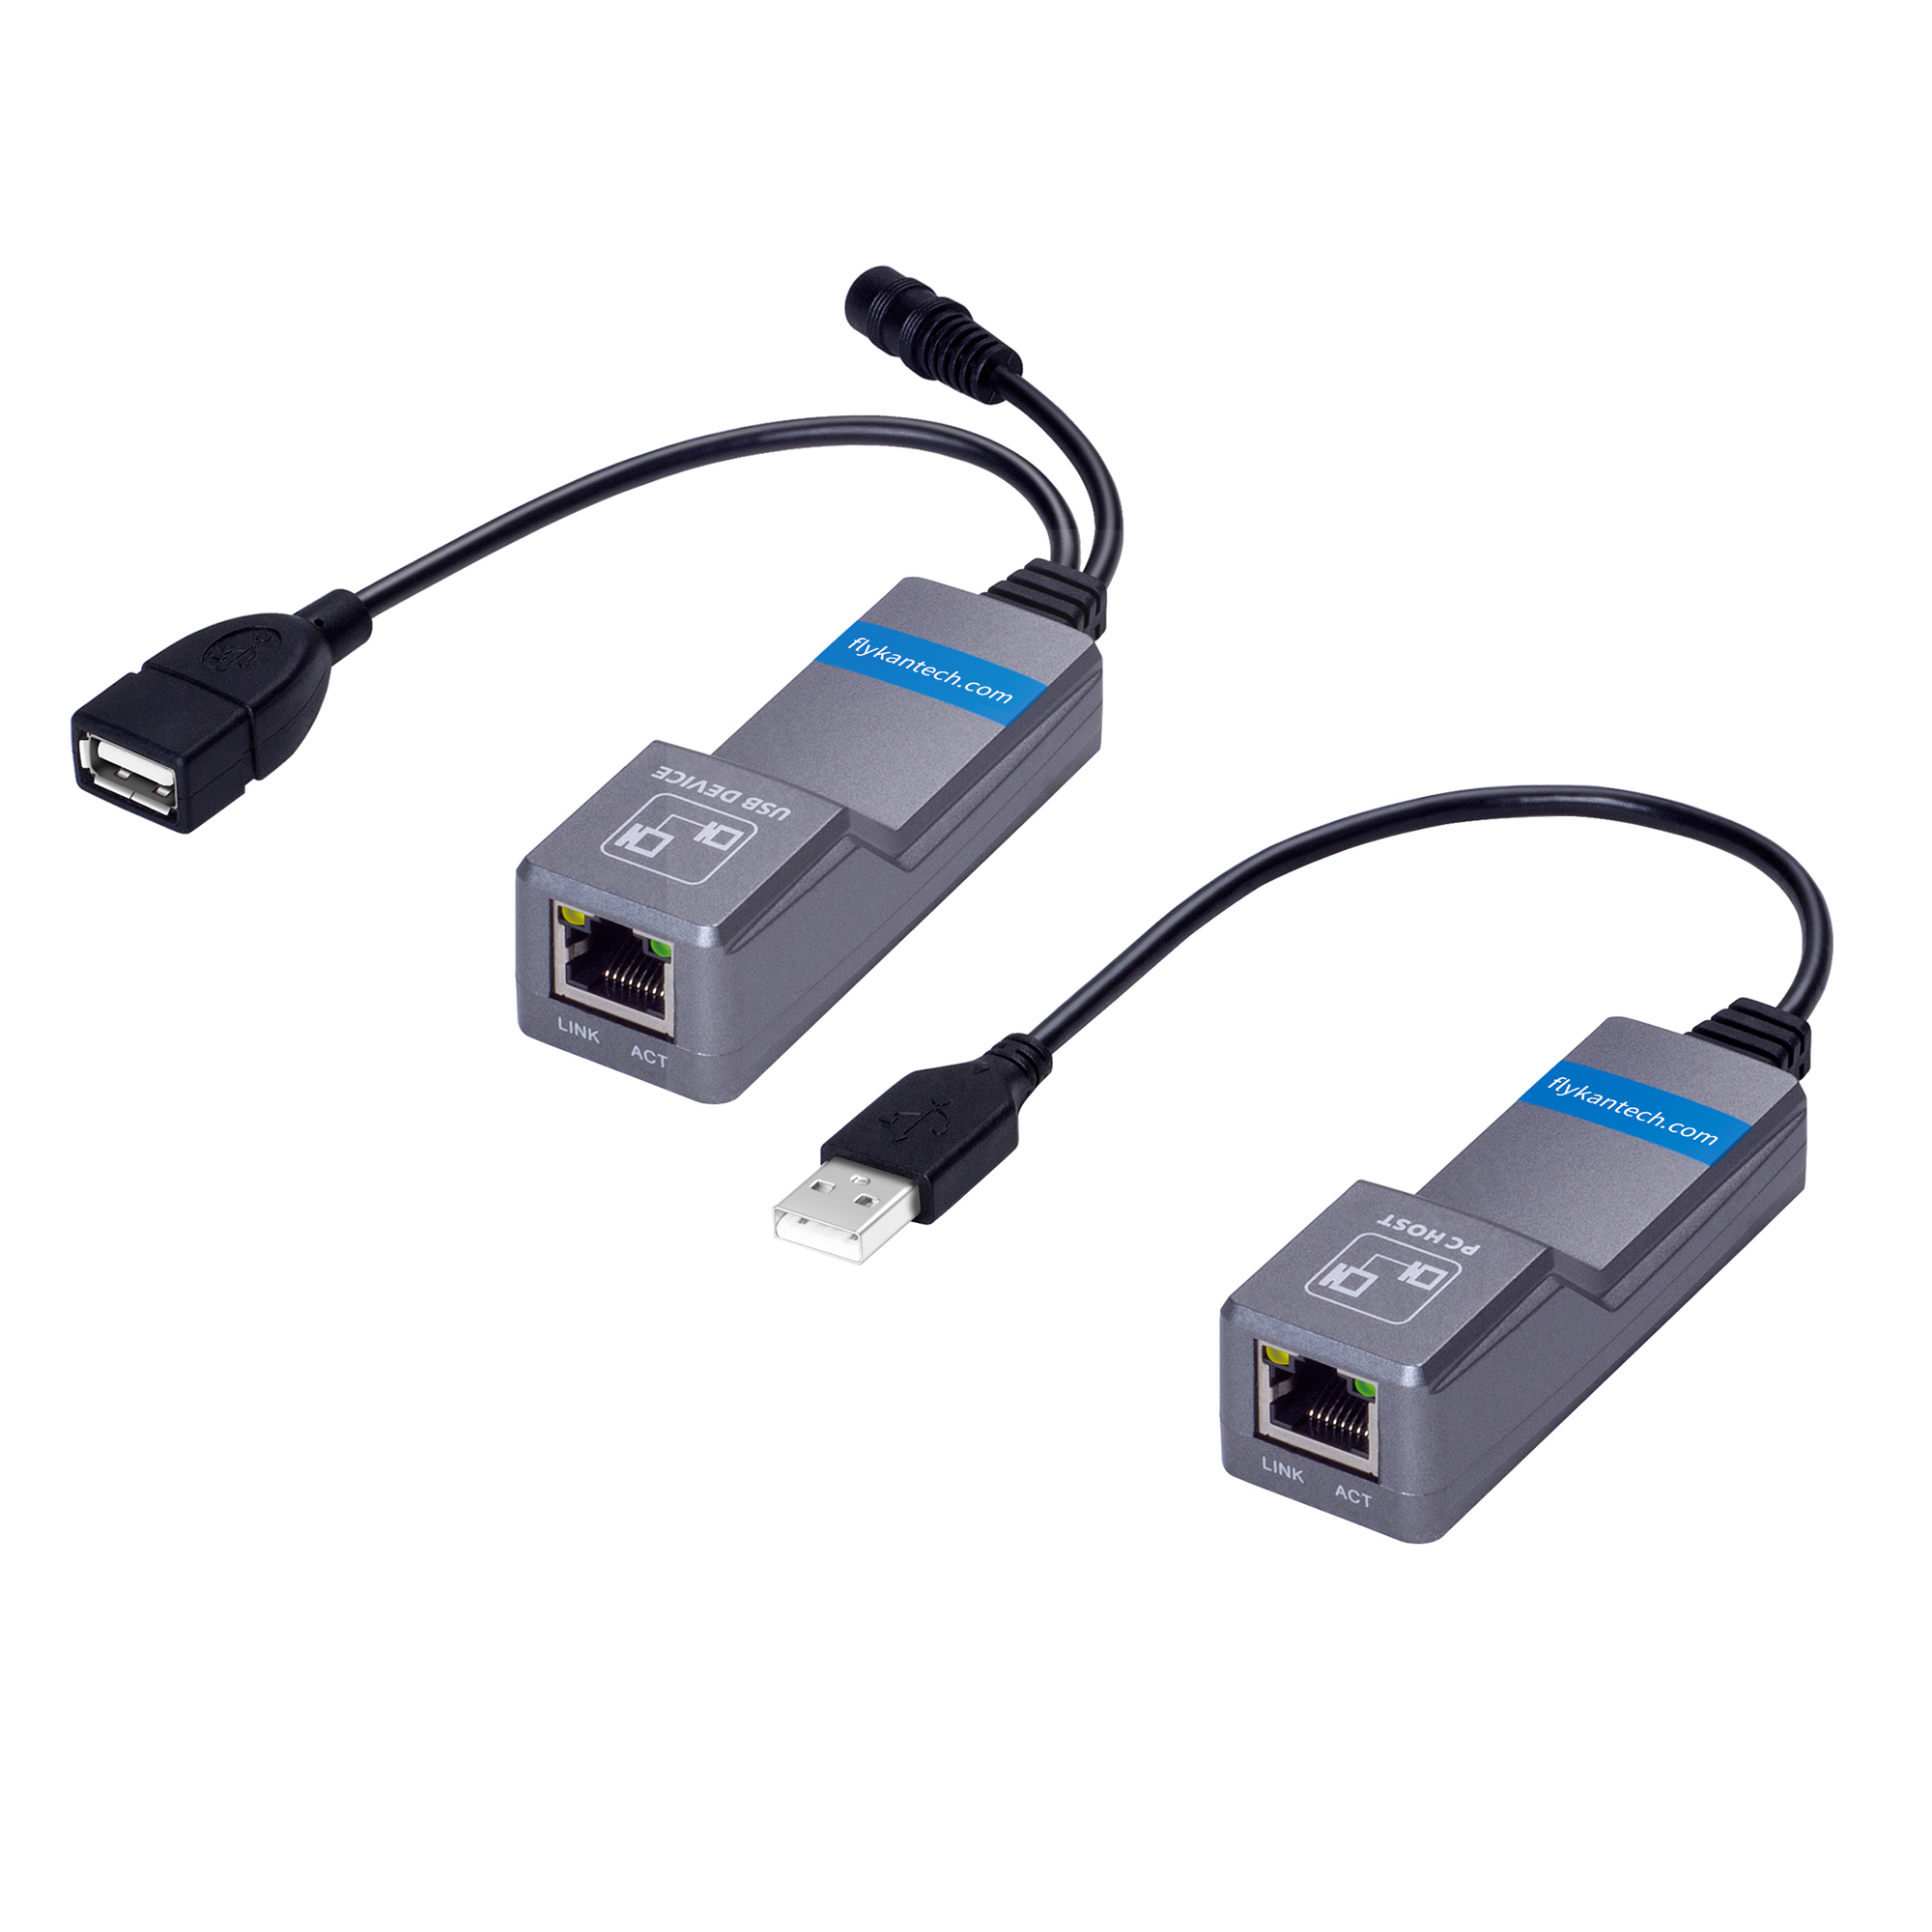 Hub USB 2.0, Adaptador Extensión USB con 6 Puertos USB 2.0